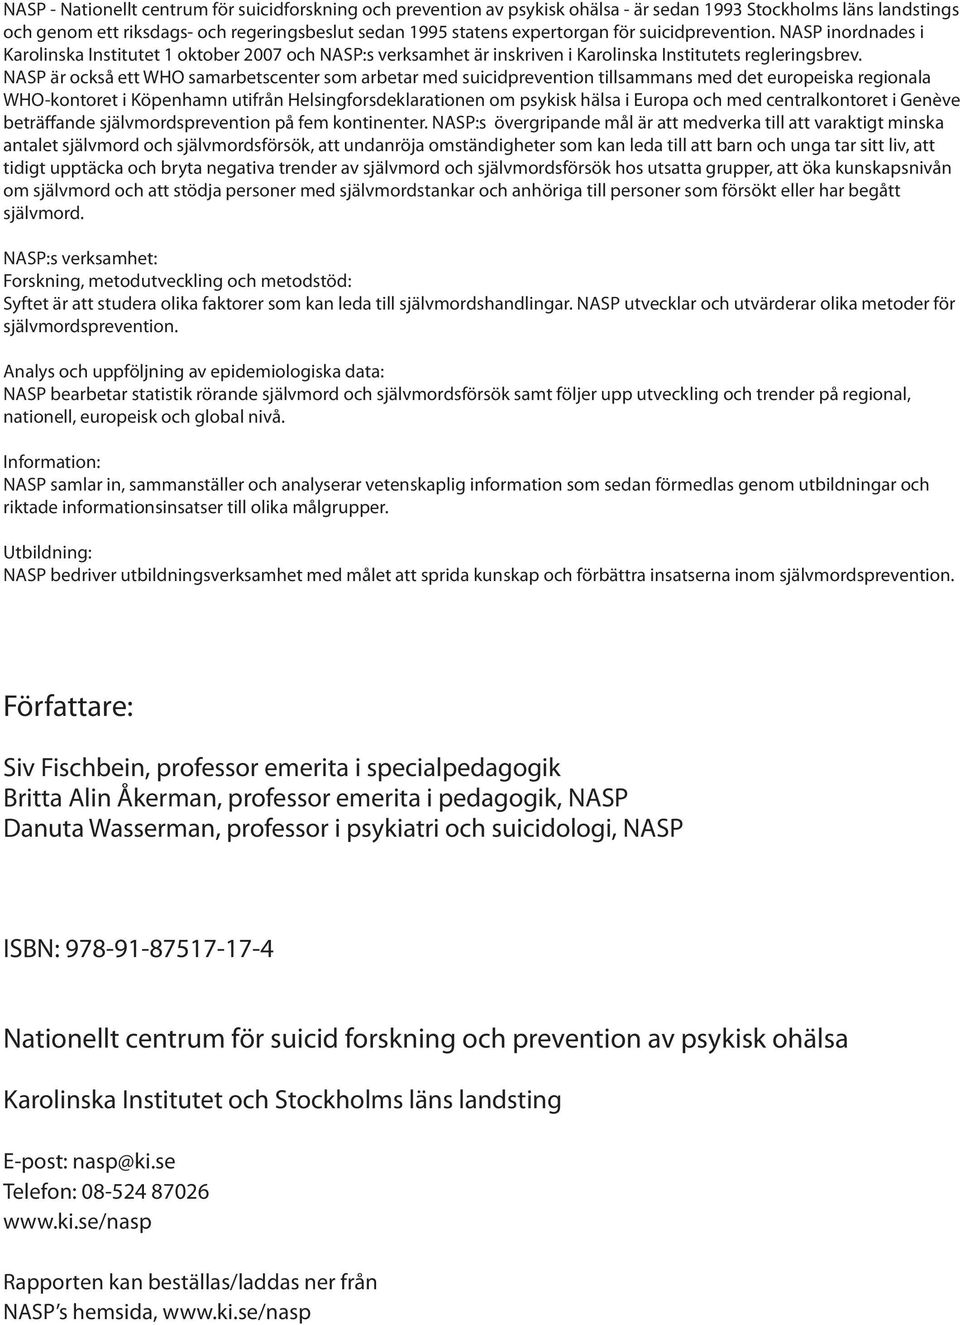 NASP är också ett WHO samarbetscenter som arbetar med suicidprevention tillsammans med det europeiska regionala WHO-kontoret i Köpenhamn utifrån Helsingforsdeklarationen om psykisk hälsa i Europa och